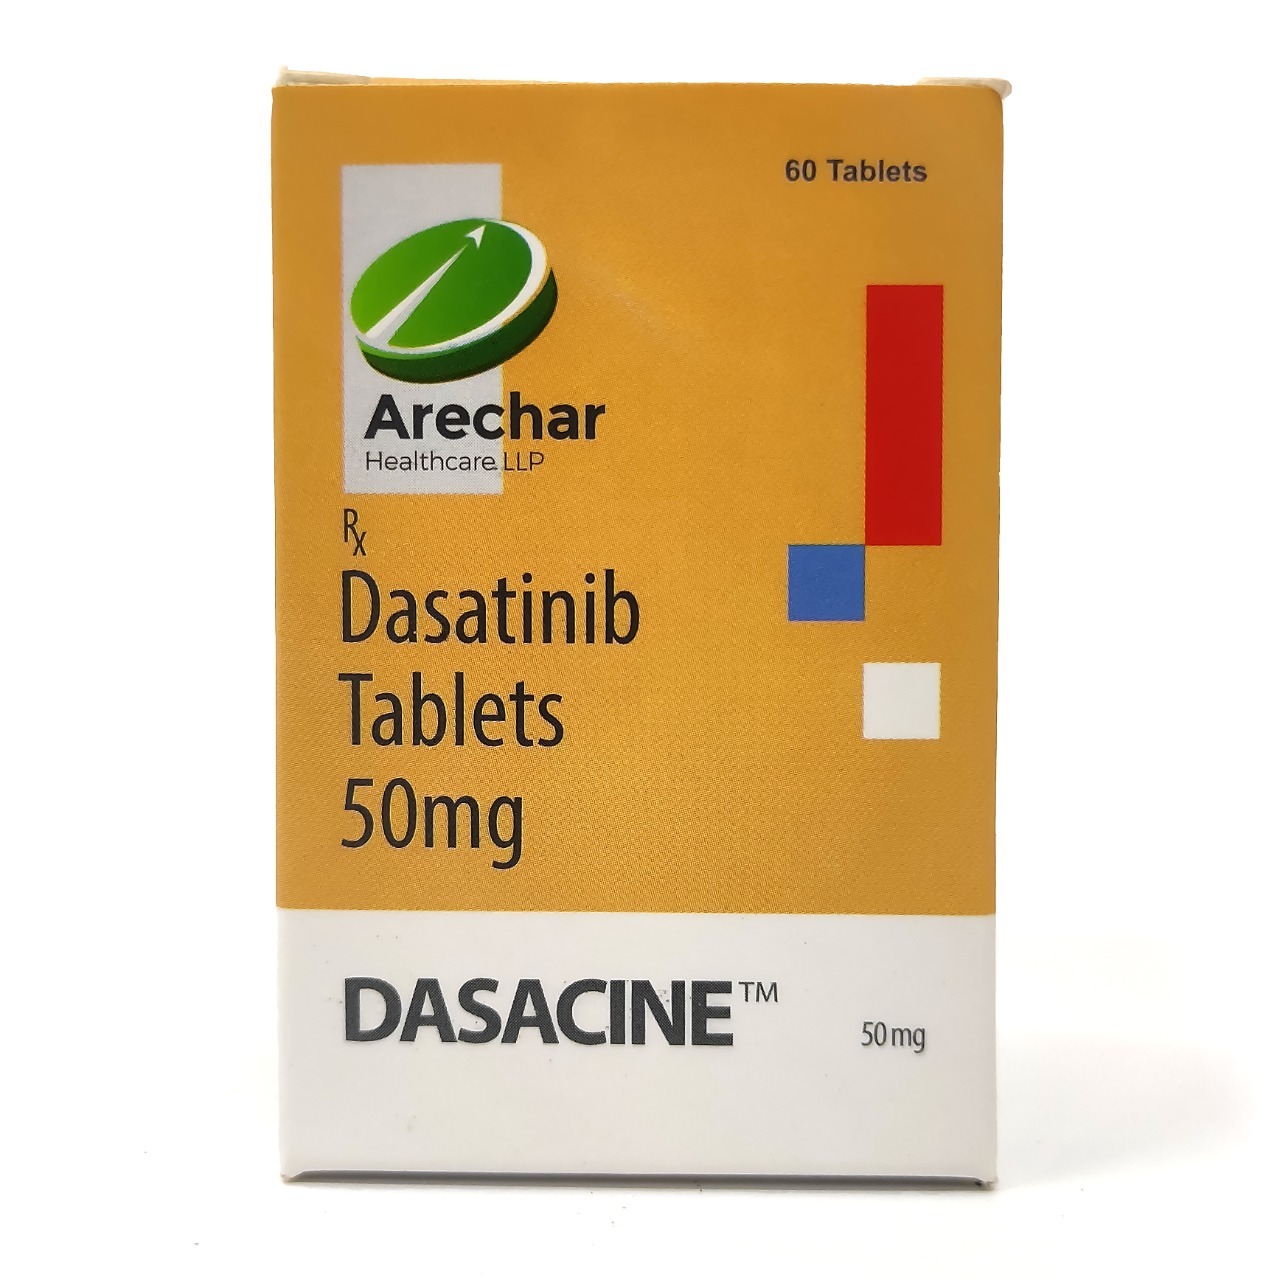 Dasatinib 50mg tablet